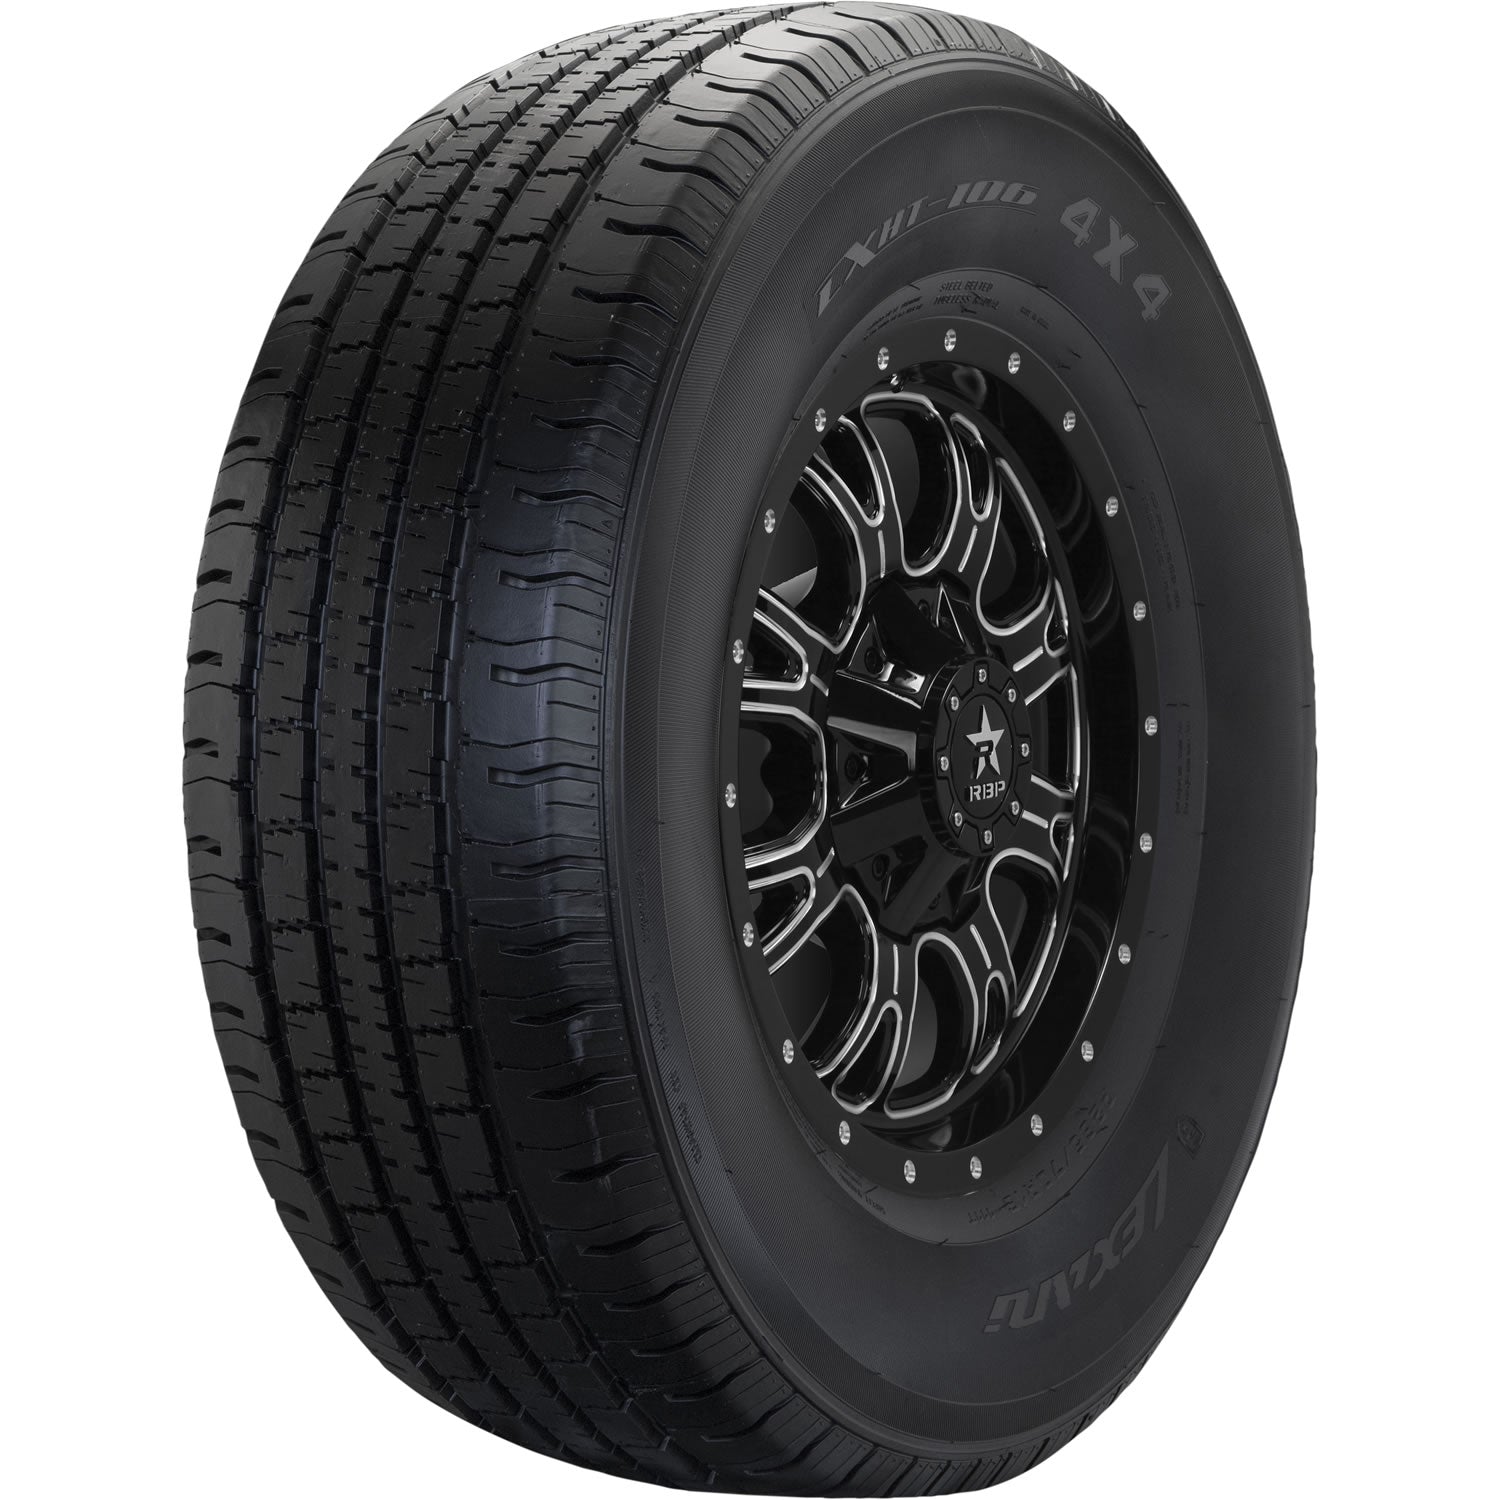 LEXANI LXHT-106 P225/65R17 (28.5X9R 17) Tires